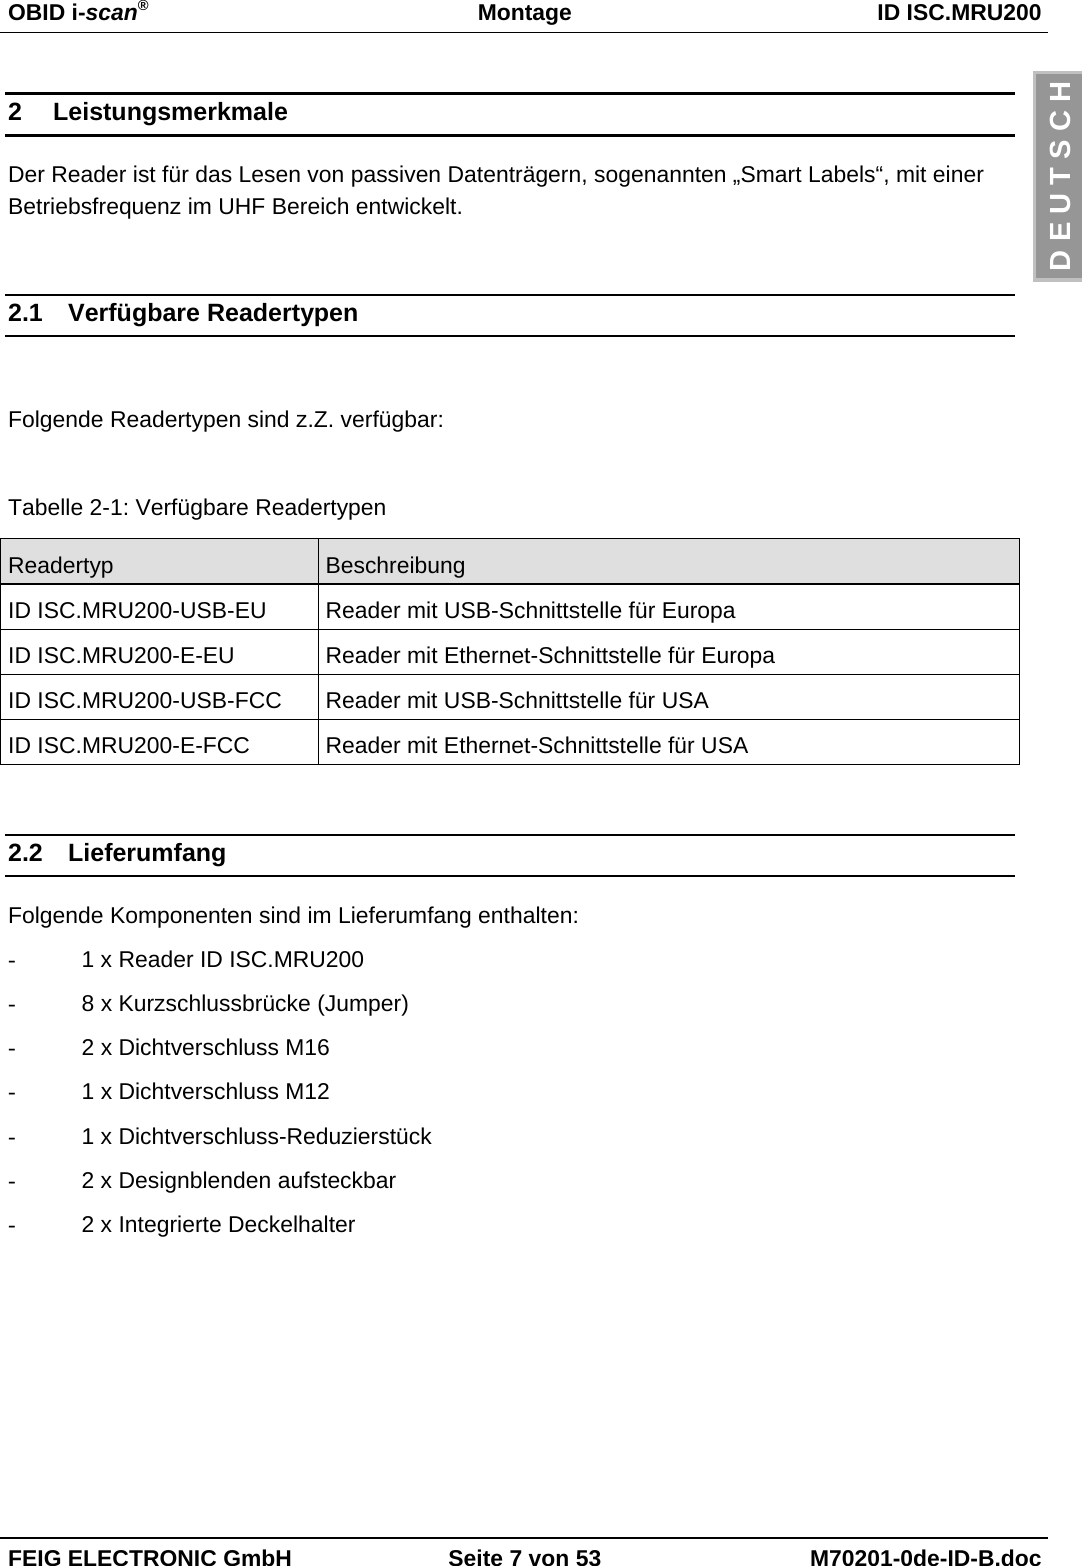 OBID i-scan®Montage ID ISC.MRU200FEIG ELECTRONIC GmbH Seite 7 von 53 M70201-0de-ID-B.docD E U T S C H2 LeistungsmerkmaleDer Reader ist für das Lesen von passiven Datenträgern, sogenannten „Smart Labels“, mit einerBetriebsfrequenz im UHF Bereich entwickelt.2.1 Verfügbare ReadertypenFolgende Readertypen sind z.Z. verfügbar:Tabelle 2-1: Verfügbare ReadertypenReadertyp BeschreibungID ISC.MRU200-USB-EU Reader mit USB-Schnittstelle für EuropaID ISC.MRU200-E-EU Reader mit Ethernet-Schnittstelle für EuropaID ISC.MRU200-USB-FCC Reader mit USB-Schnittstelle für USAID ISC.MRU200-E-FCC Reader mit Ethernet-Schnittstelle für USA2.2 LieferumfangFolgende Komponenten sind im Lieferumfang enthalten:-  1 x Reader ID ISC.MRU200-  8 x Kurzschlussbrücke (Jumper)-  2 x Dichtverschluss M16-  1 x Dichtverschluss M12-  1 x Dichtverschluss-Reduzierstück-  2 x Designblenden aufsteckbar-  2 x Integrierte Deckelhalter